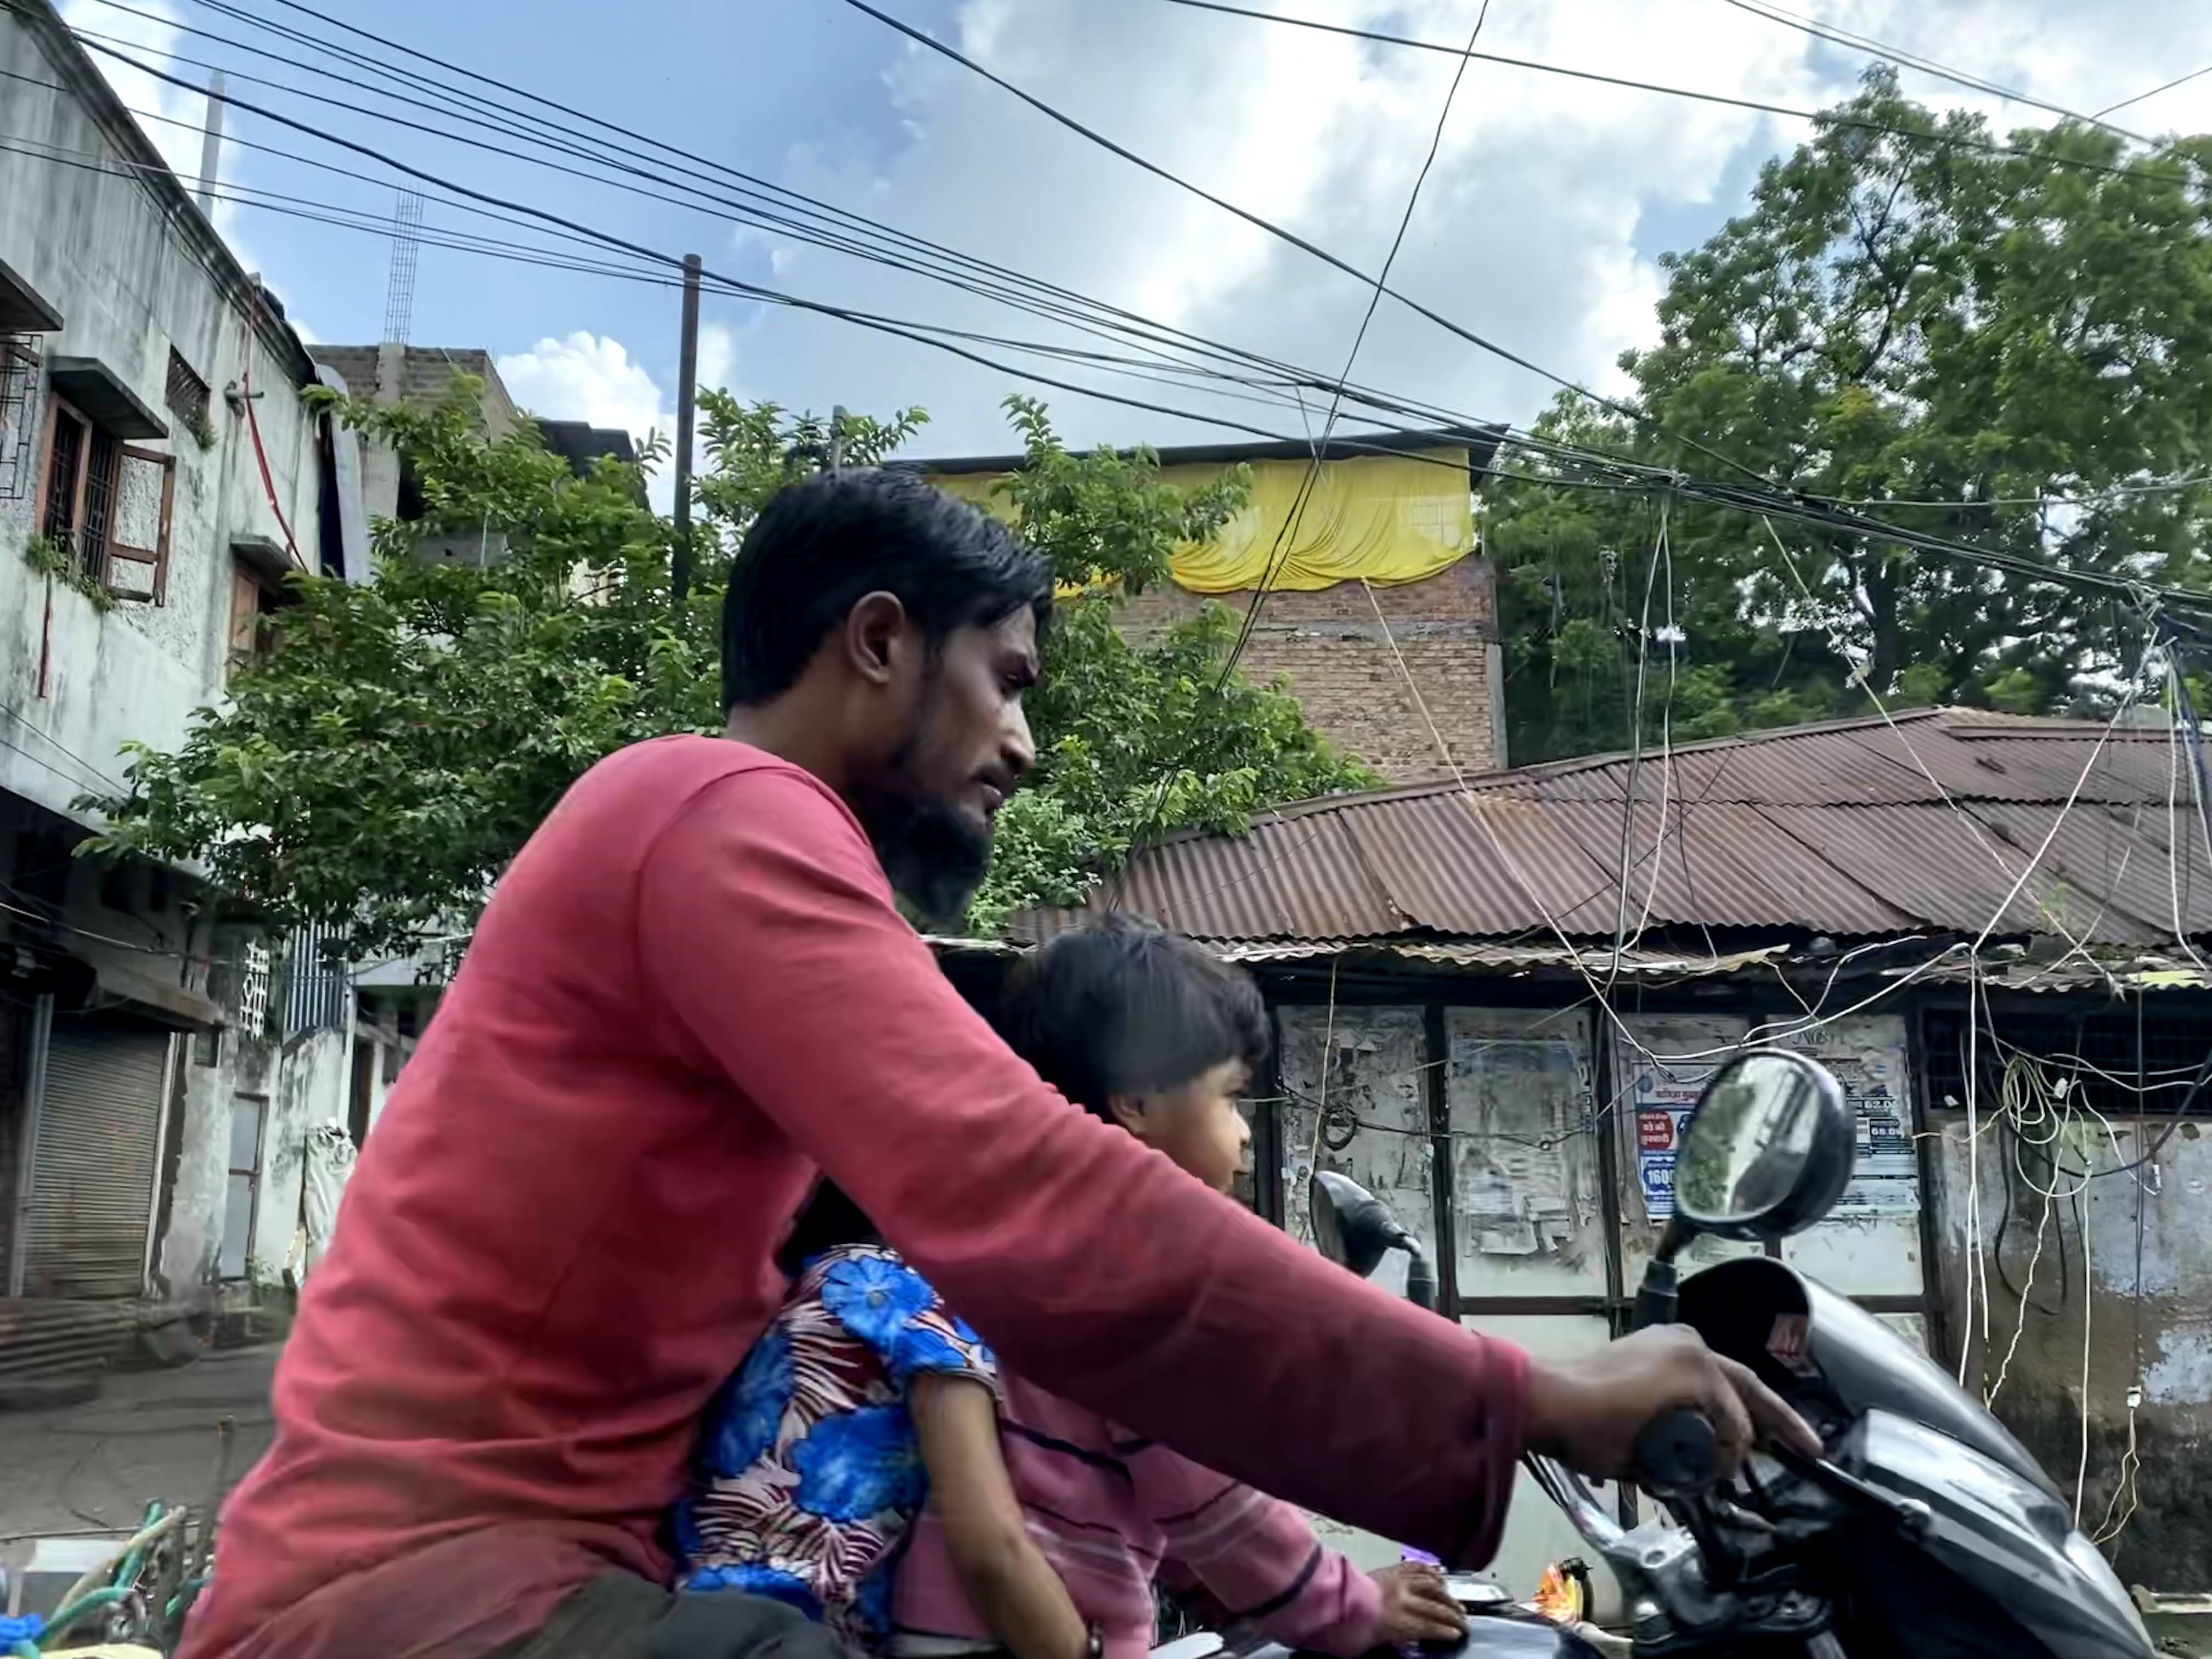 famille de 3 sur un scooter en inde